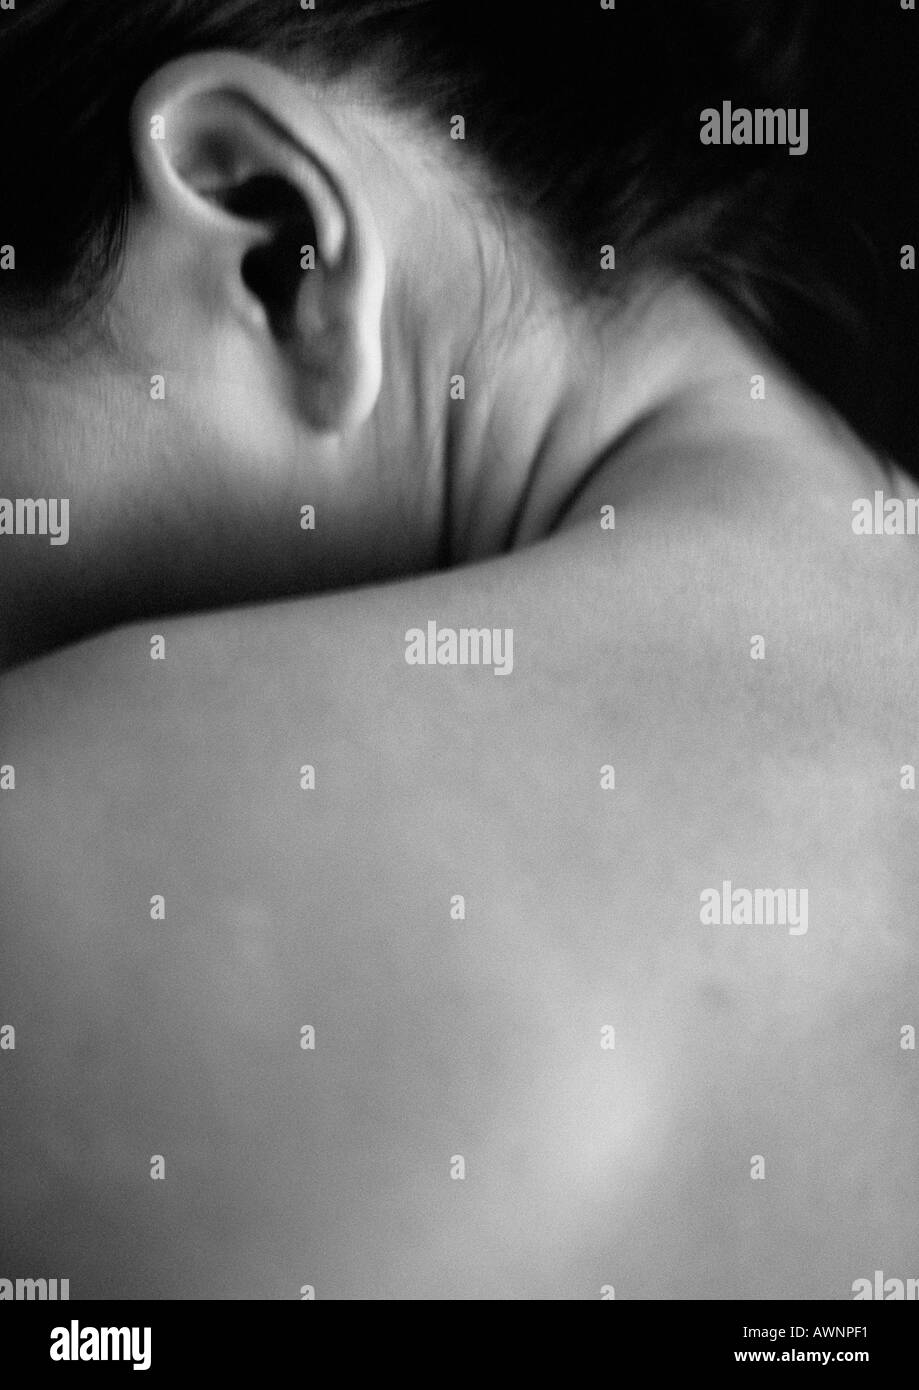 Woman's épaule nue et oreille, close-up, B&W Banque D'Images